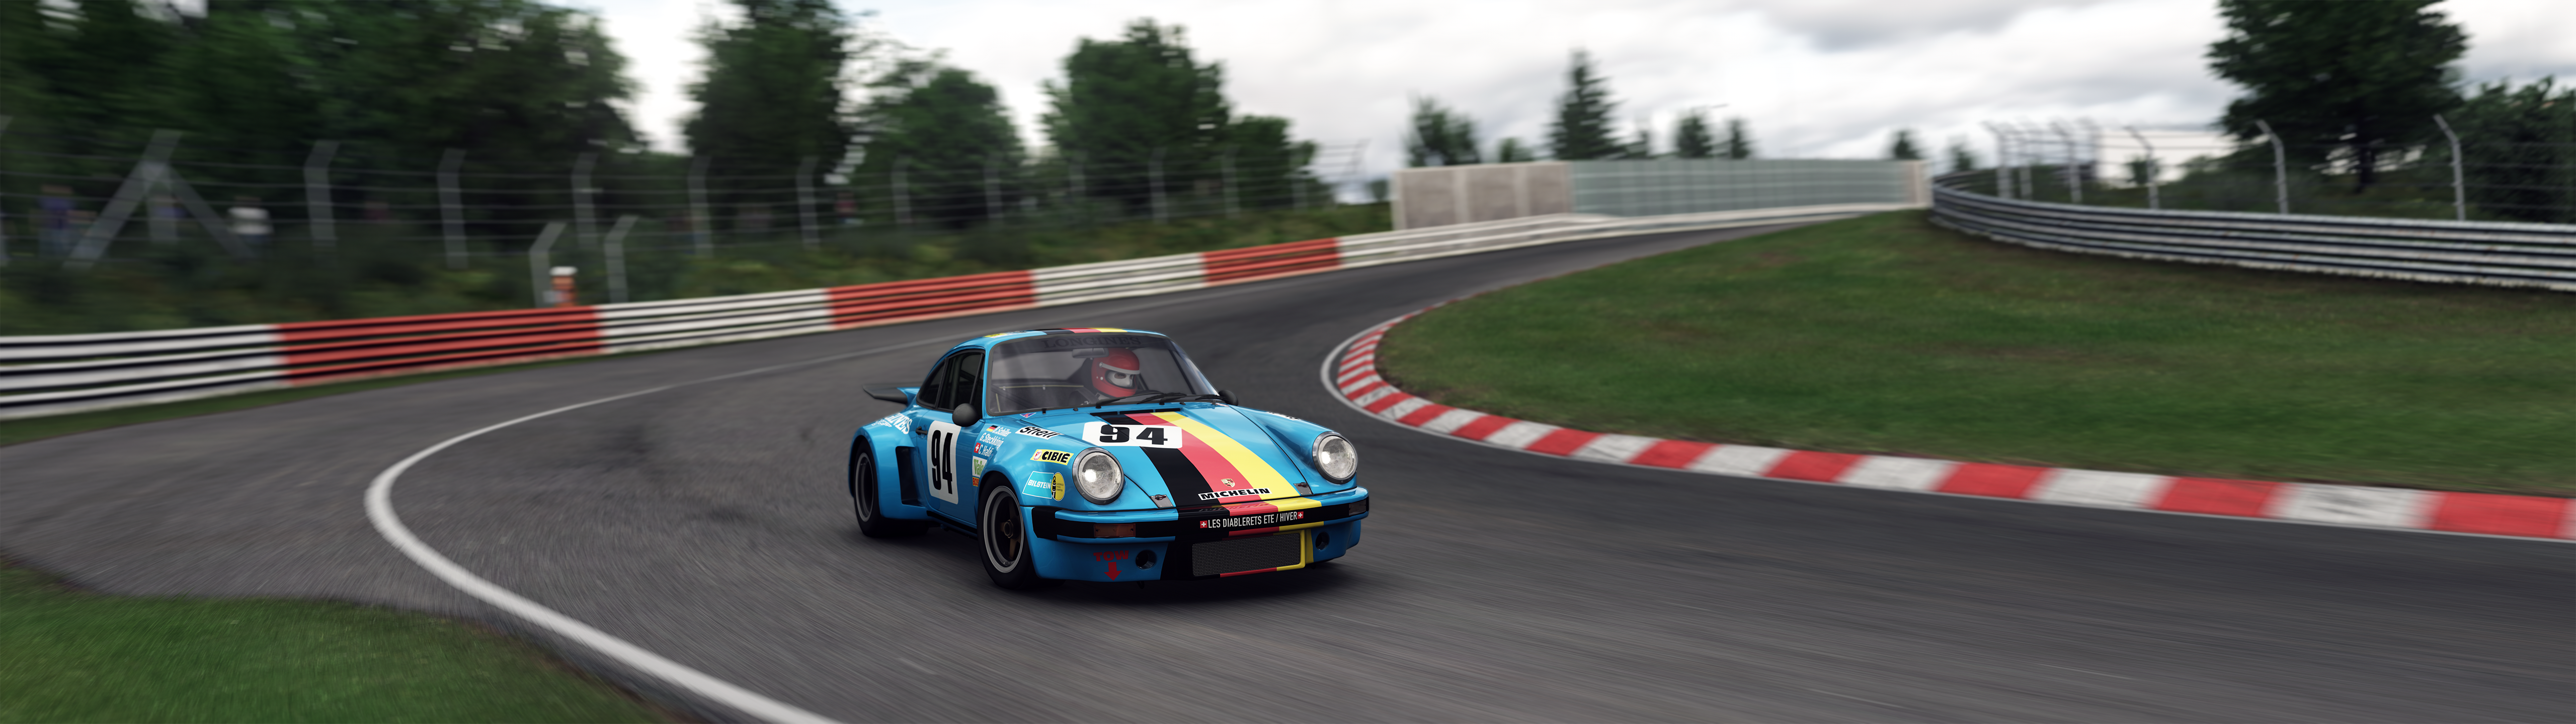 Assetto Corsa Nurburgring Porsche 911 RSR Porsche RSR Video Games Car Race Tracks 5120x1440